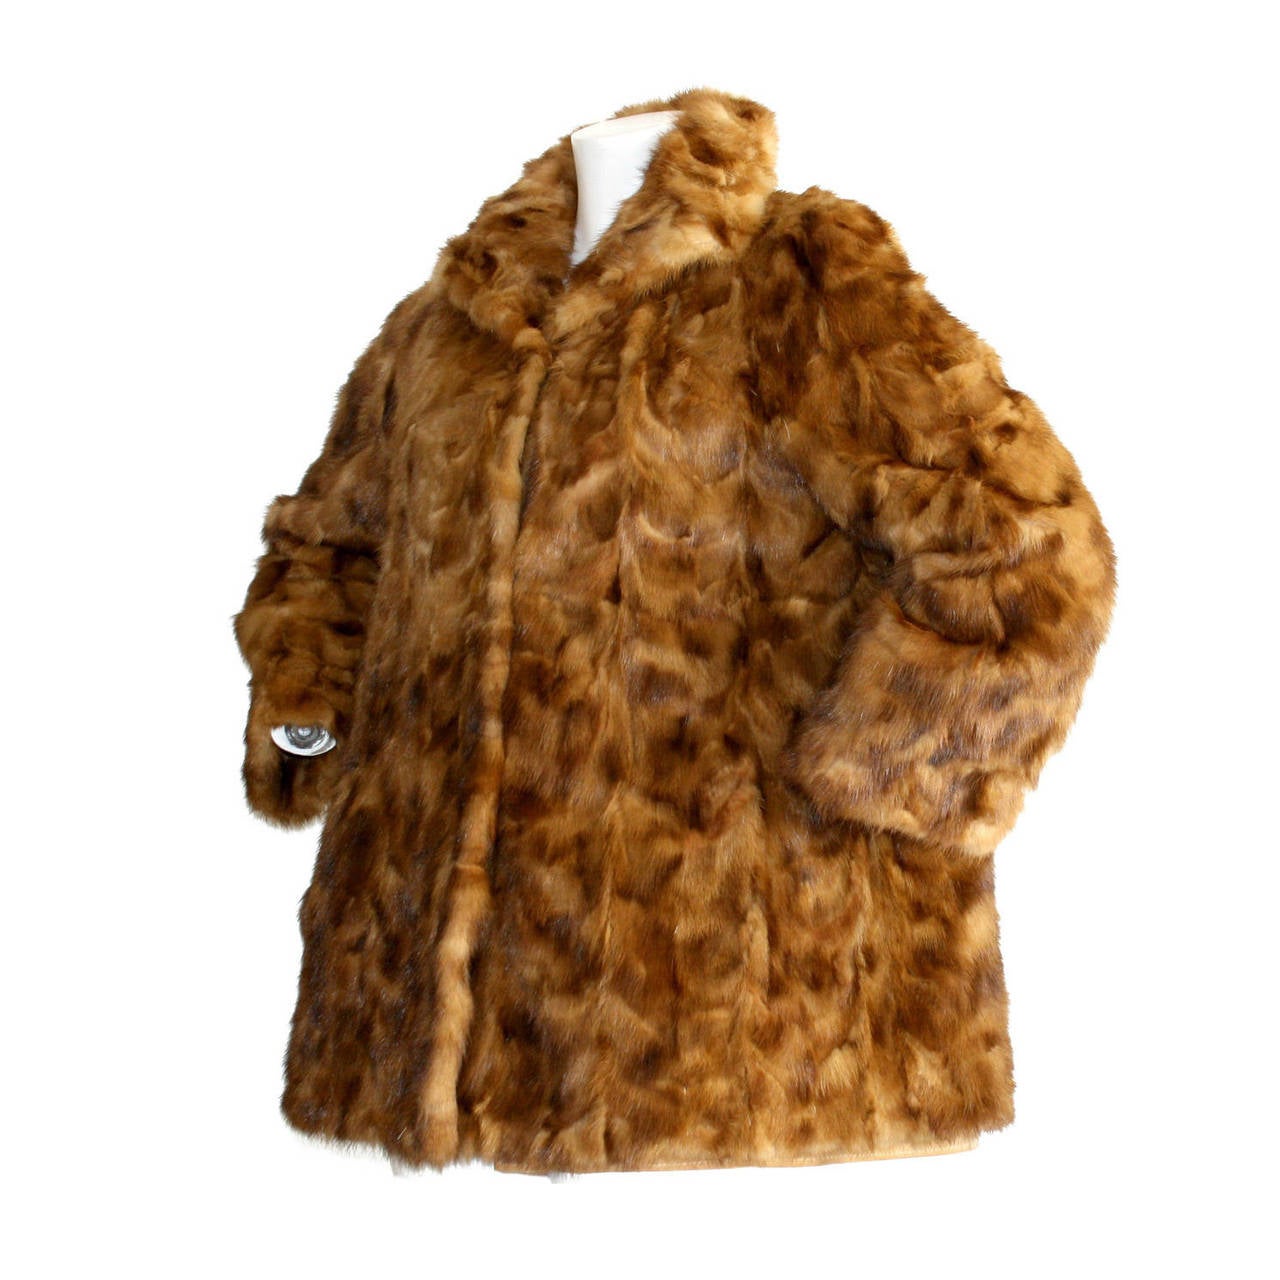 Incredibly Rare Vintage Fendi Mink Fur Swing Coat Jacket